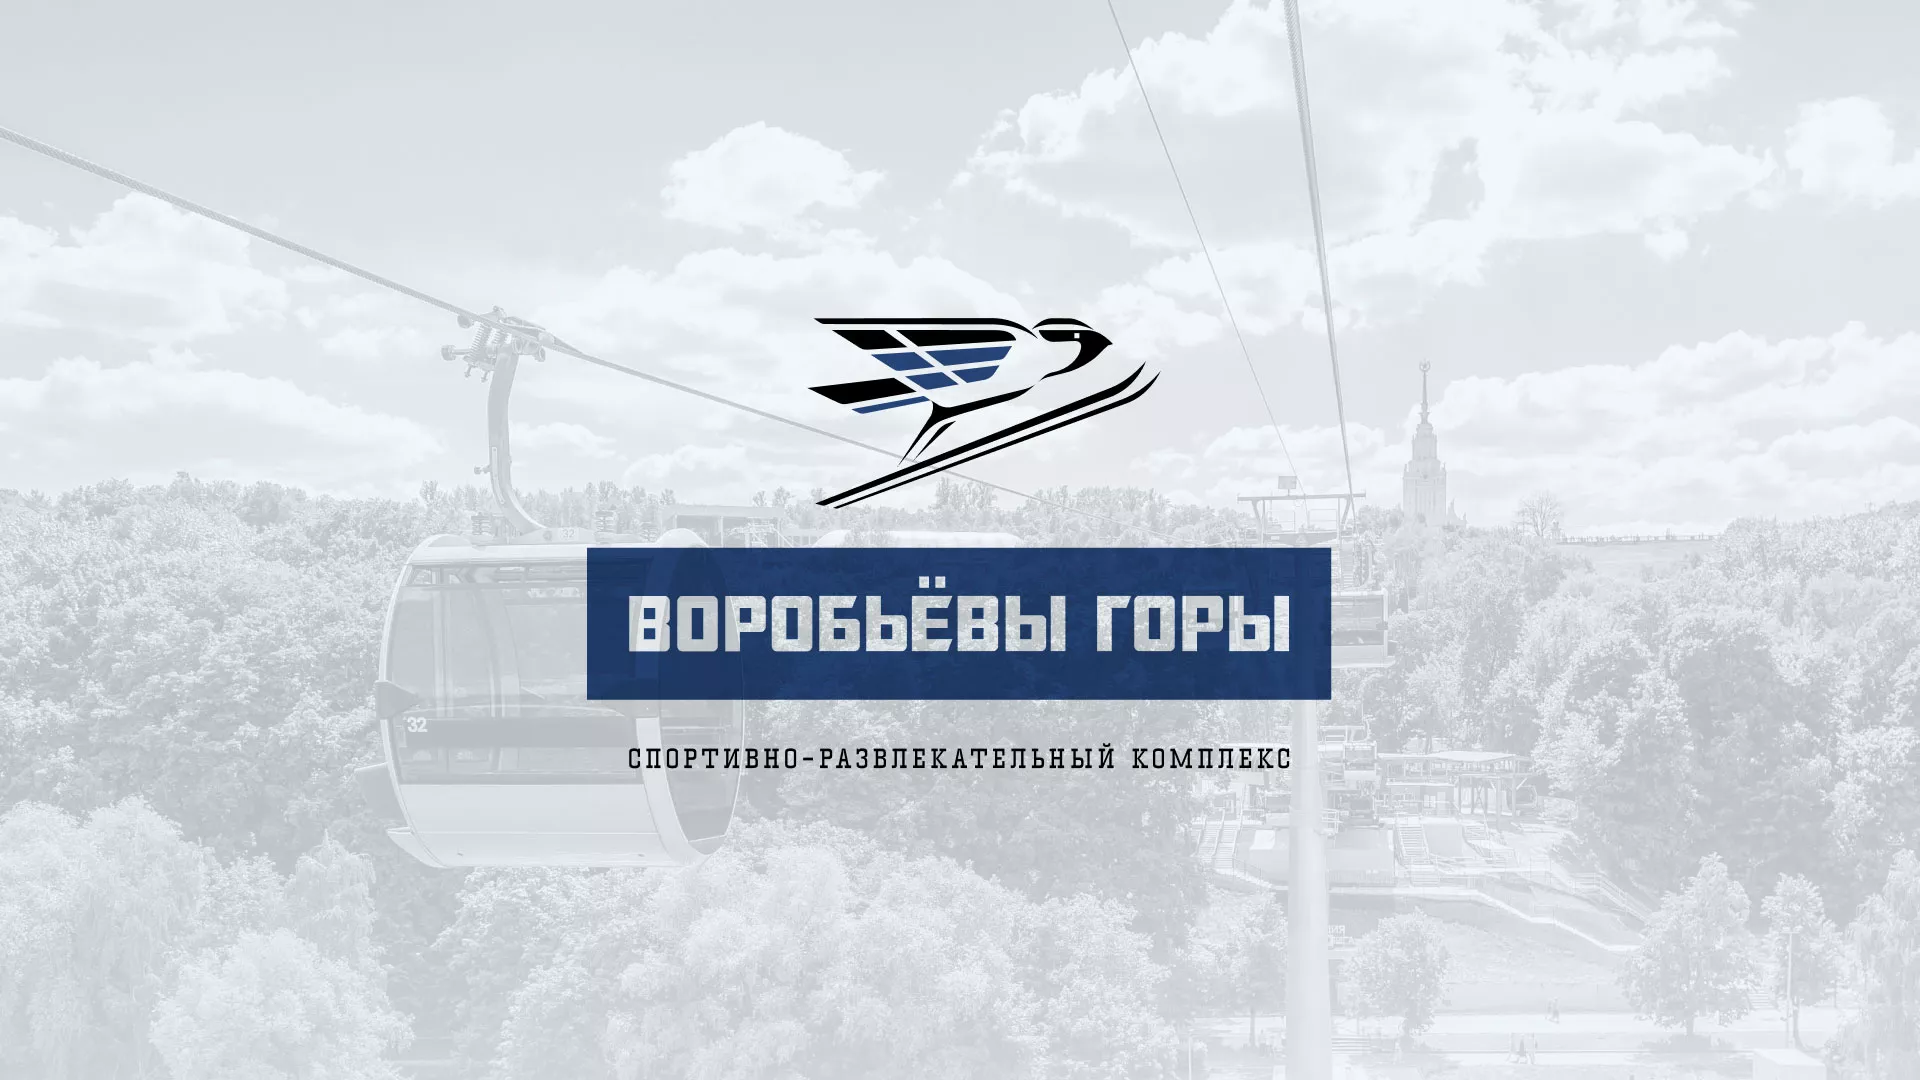 Разработка сайта в Меленках для спортивно-развлекательного комплекса «Воробьёвы горы»